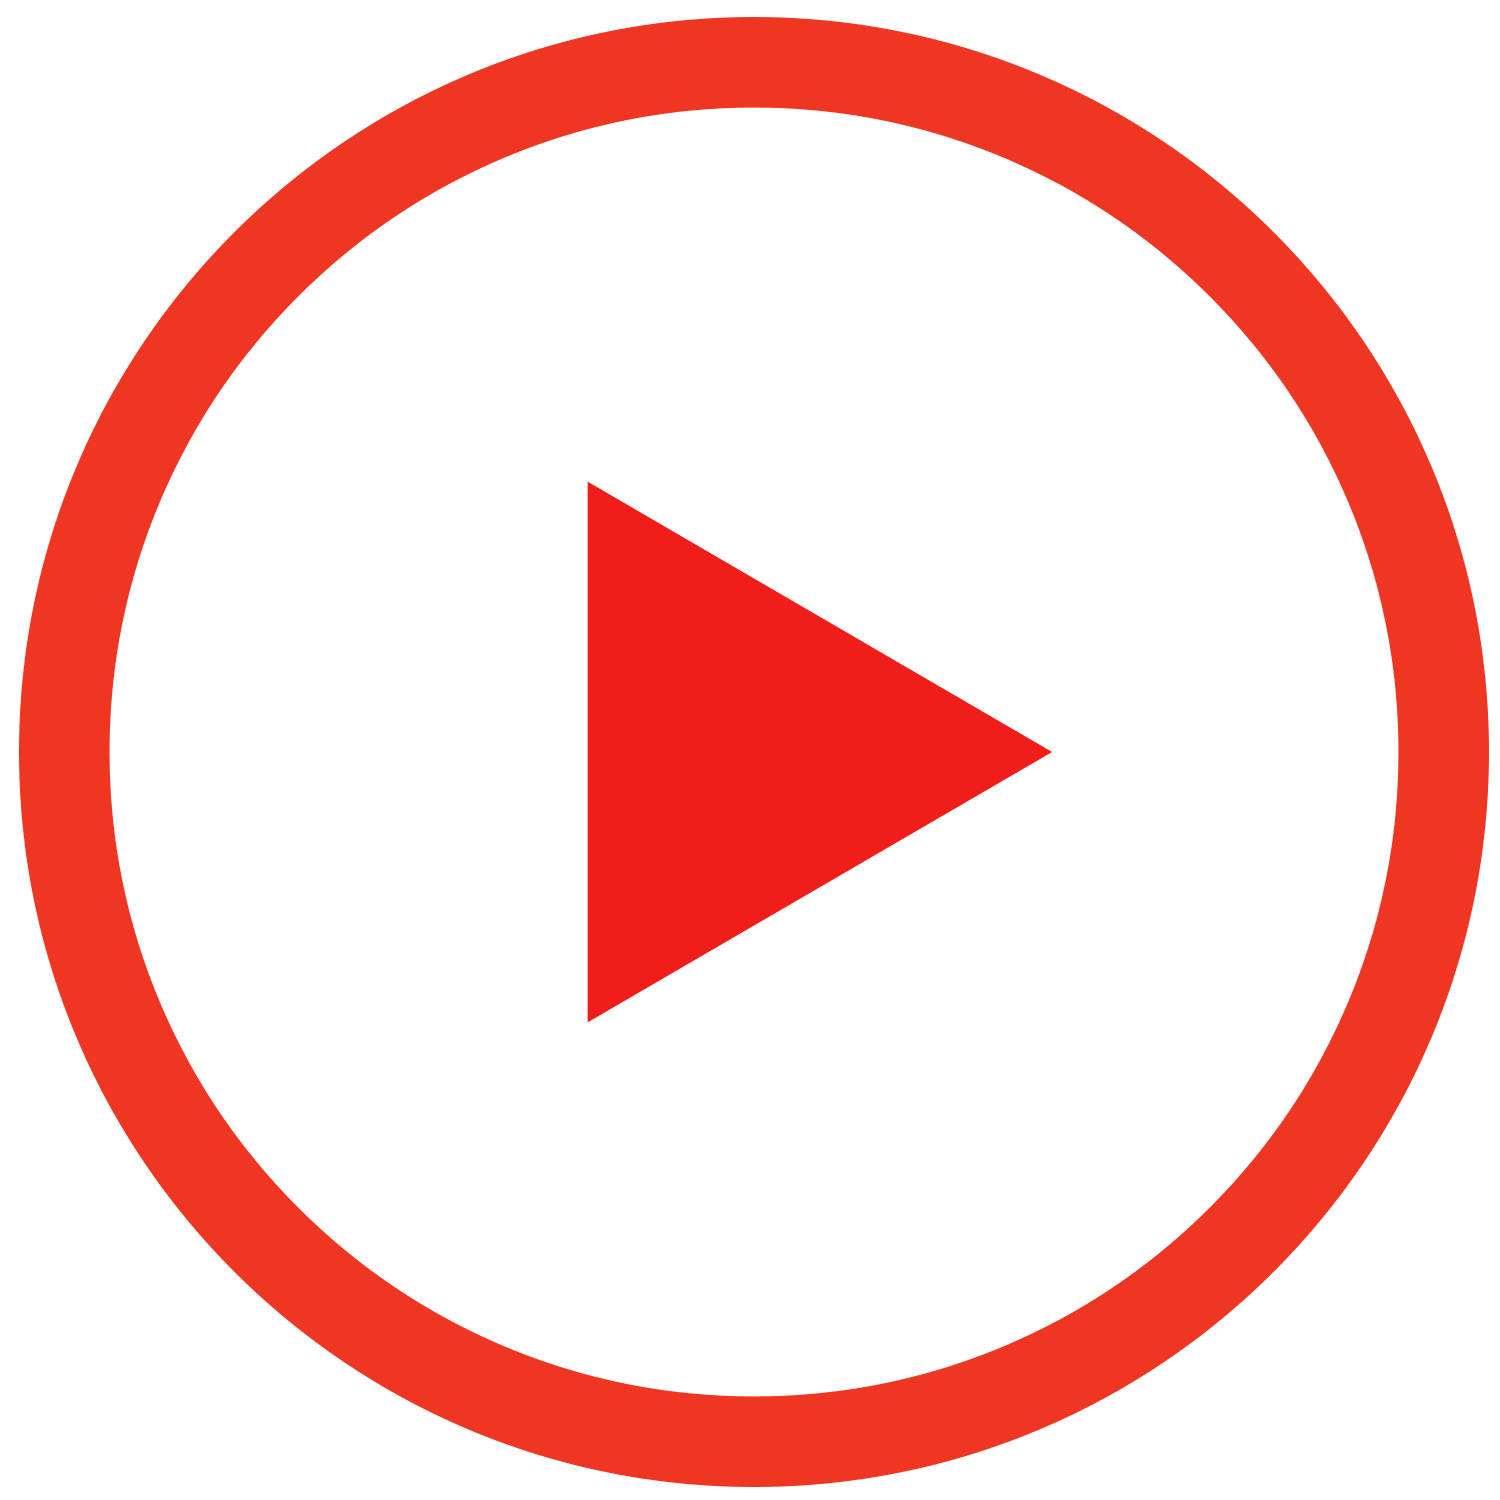 youtube logo play button